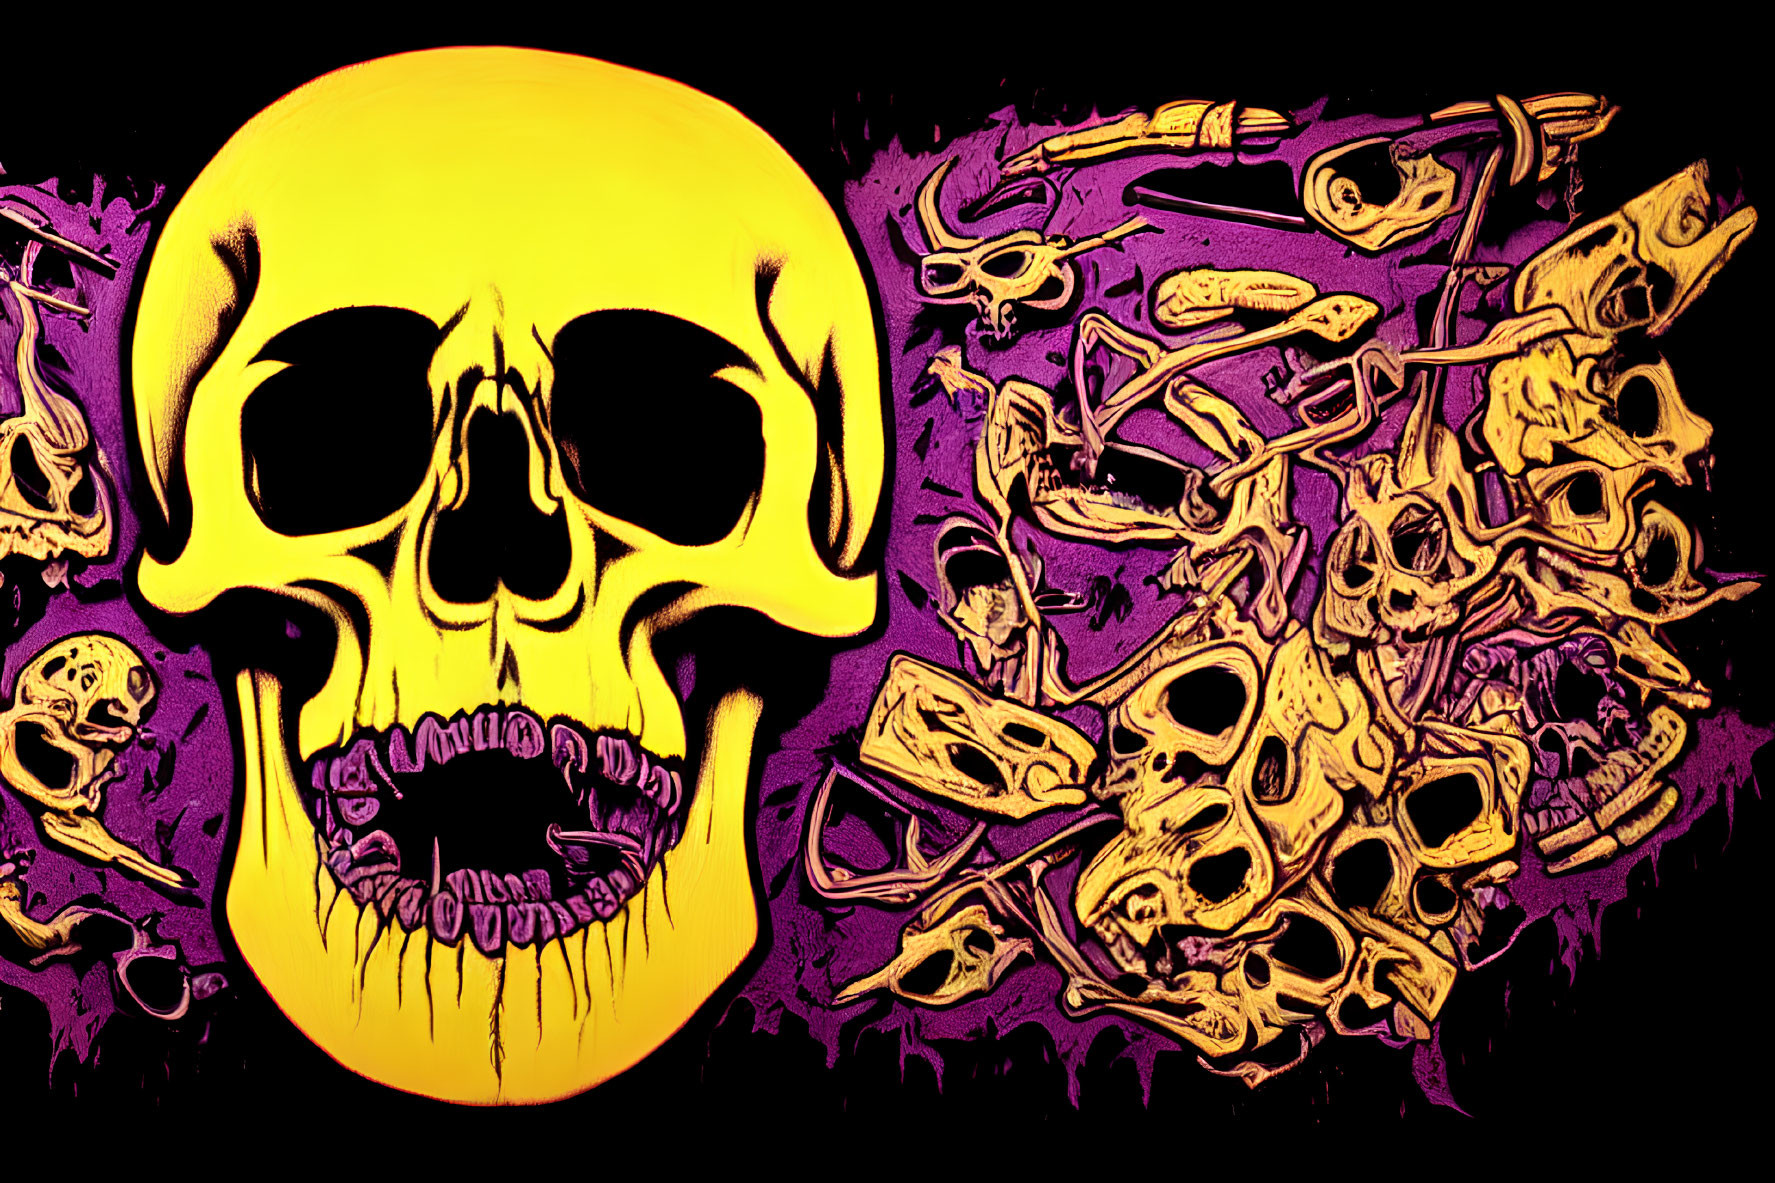 Vivid Yellow Skull Among Smaller Skulls on Purple Background